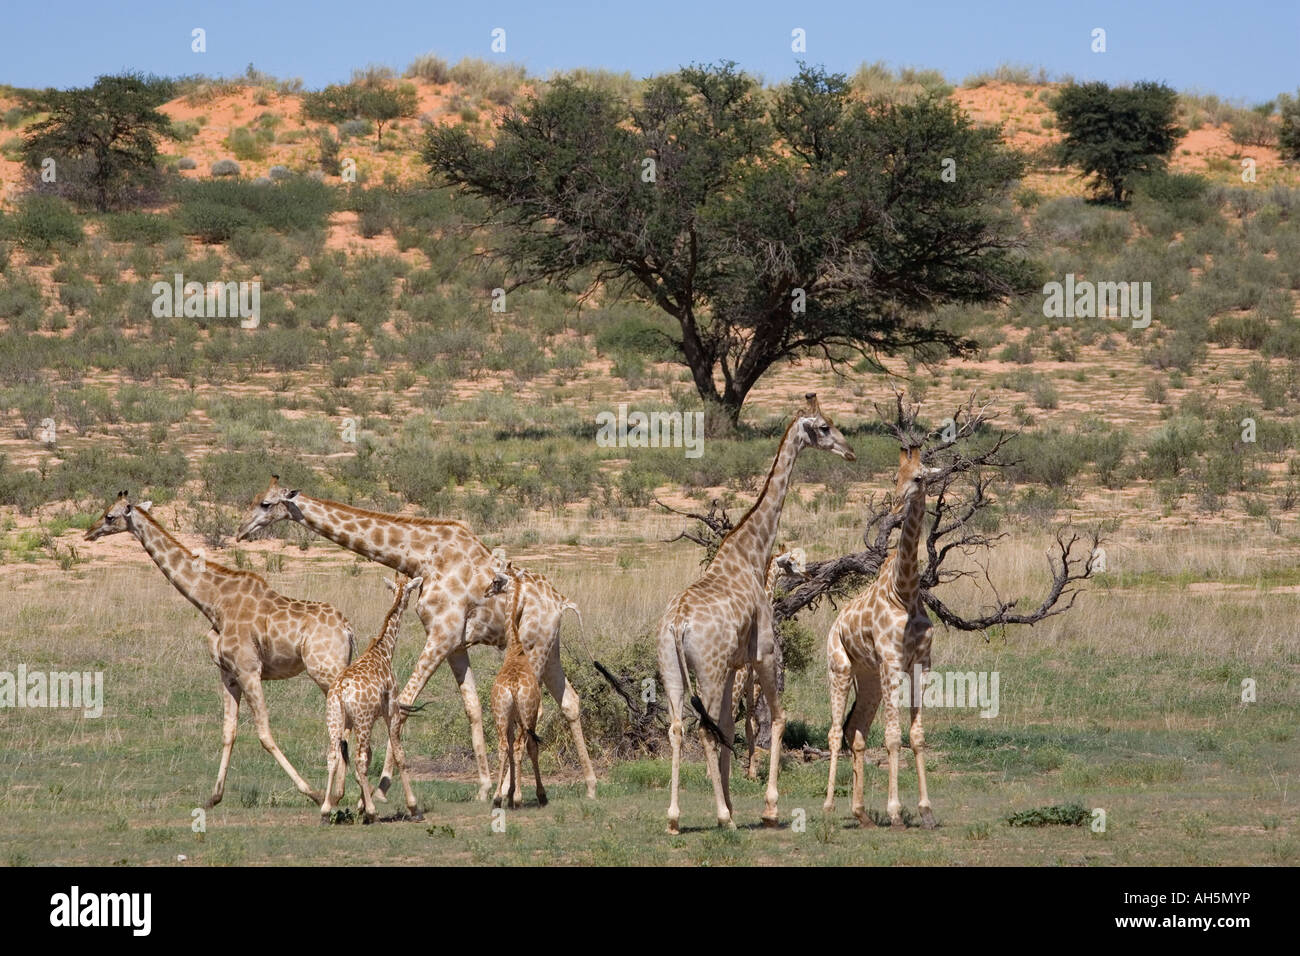 Girafe Giraffa camelopardalis Parc transfrontalier de Kgalagadi en Afrique du Sud Banque D'Images